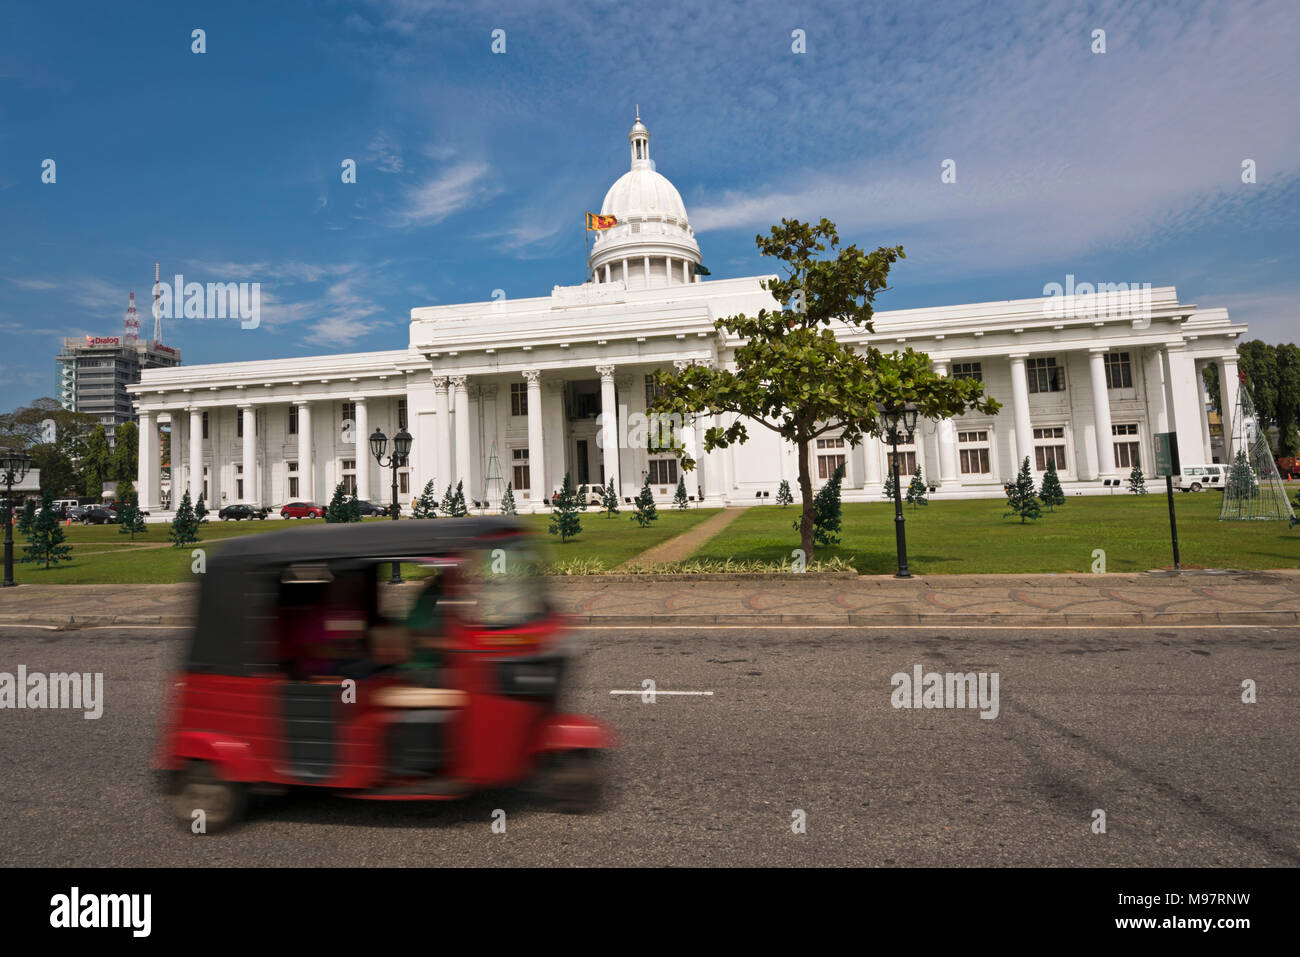 Vue horizontale de la colombo Town Hall surnommée la Maison Blanche, Colombo Sri Lanka. Banque D'Images